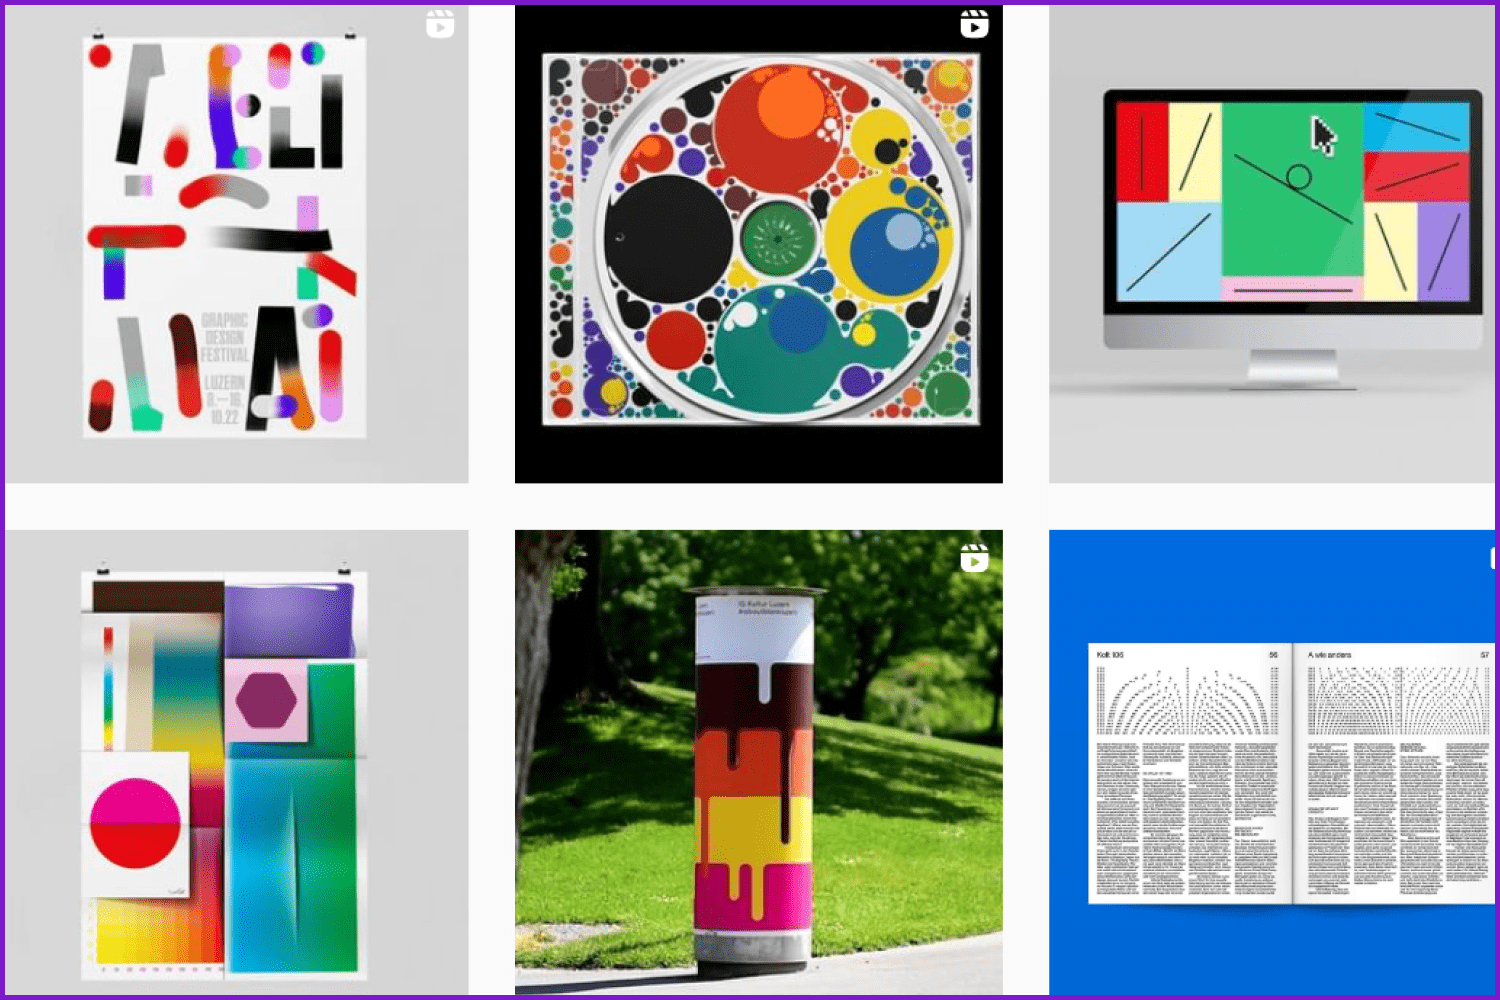 Collage of Instagram account images @studiofeixen.